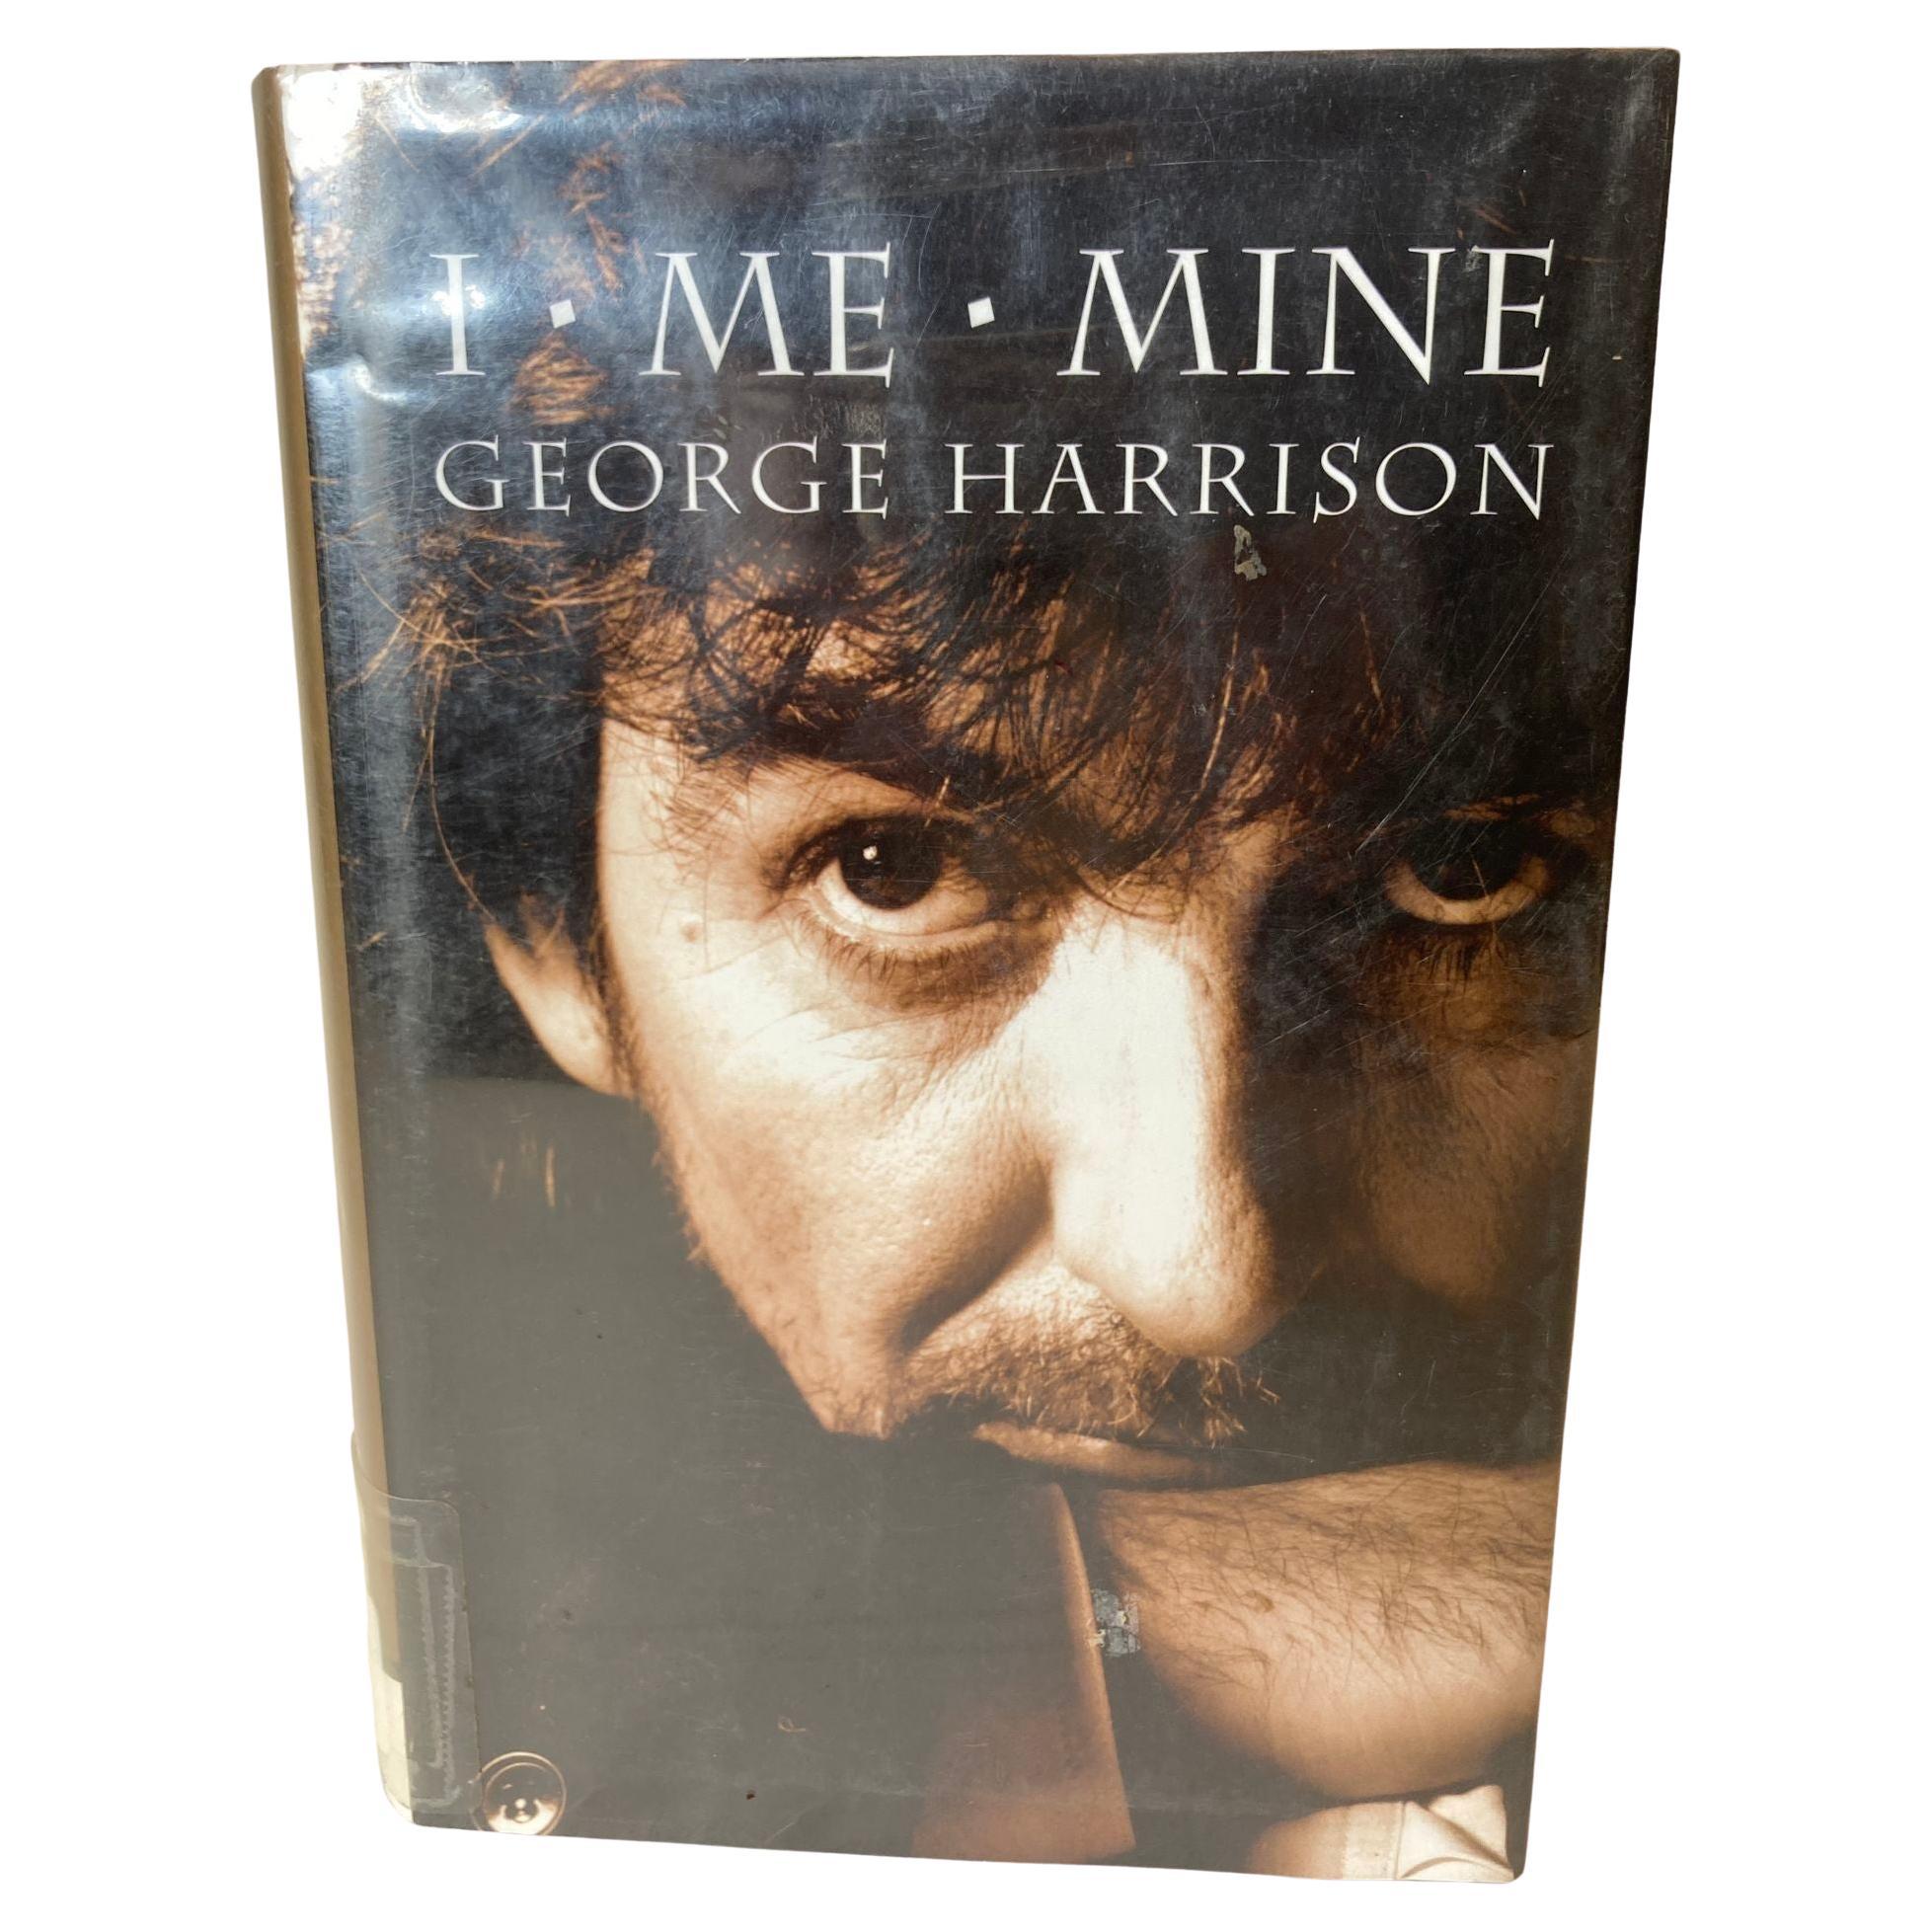 I, Me, Mine - Memoir autobiographie du musicien anglais George Harrison des Beatles